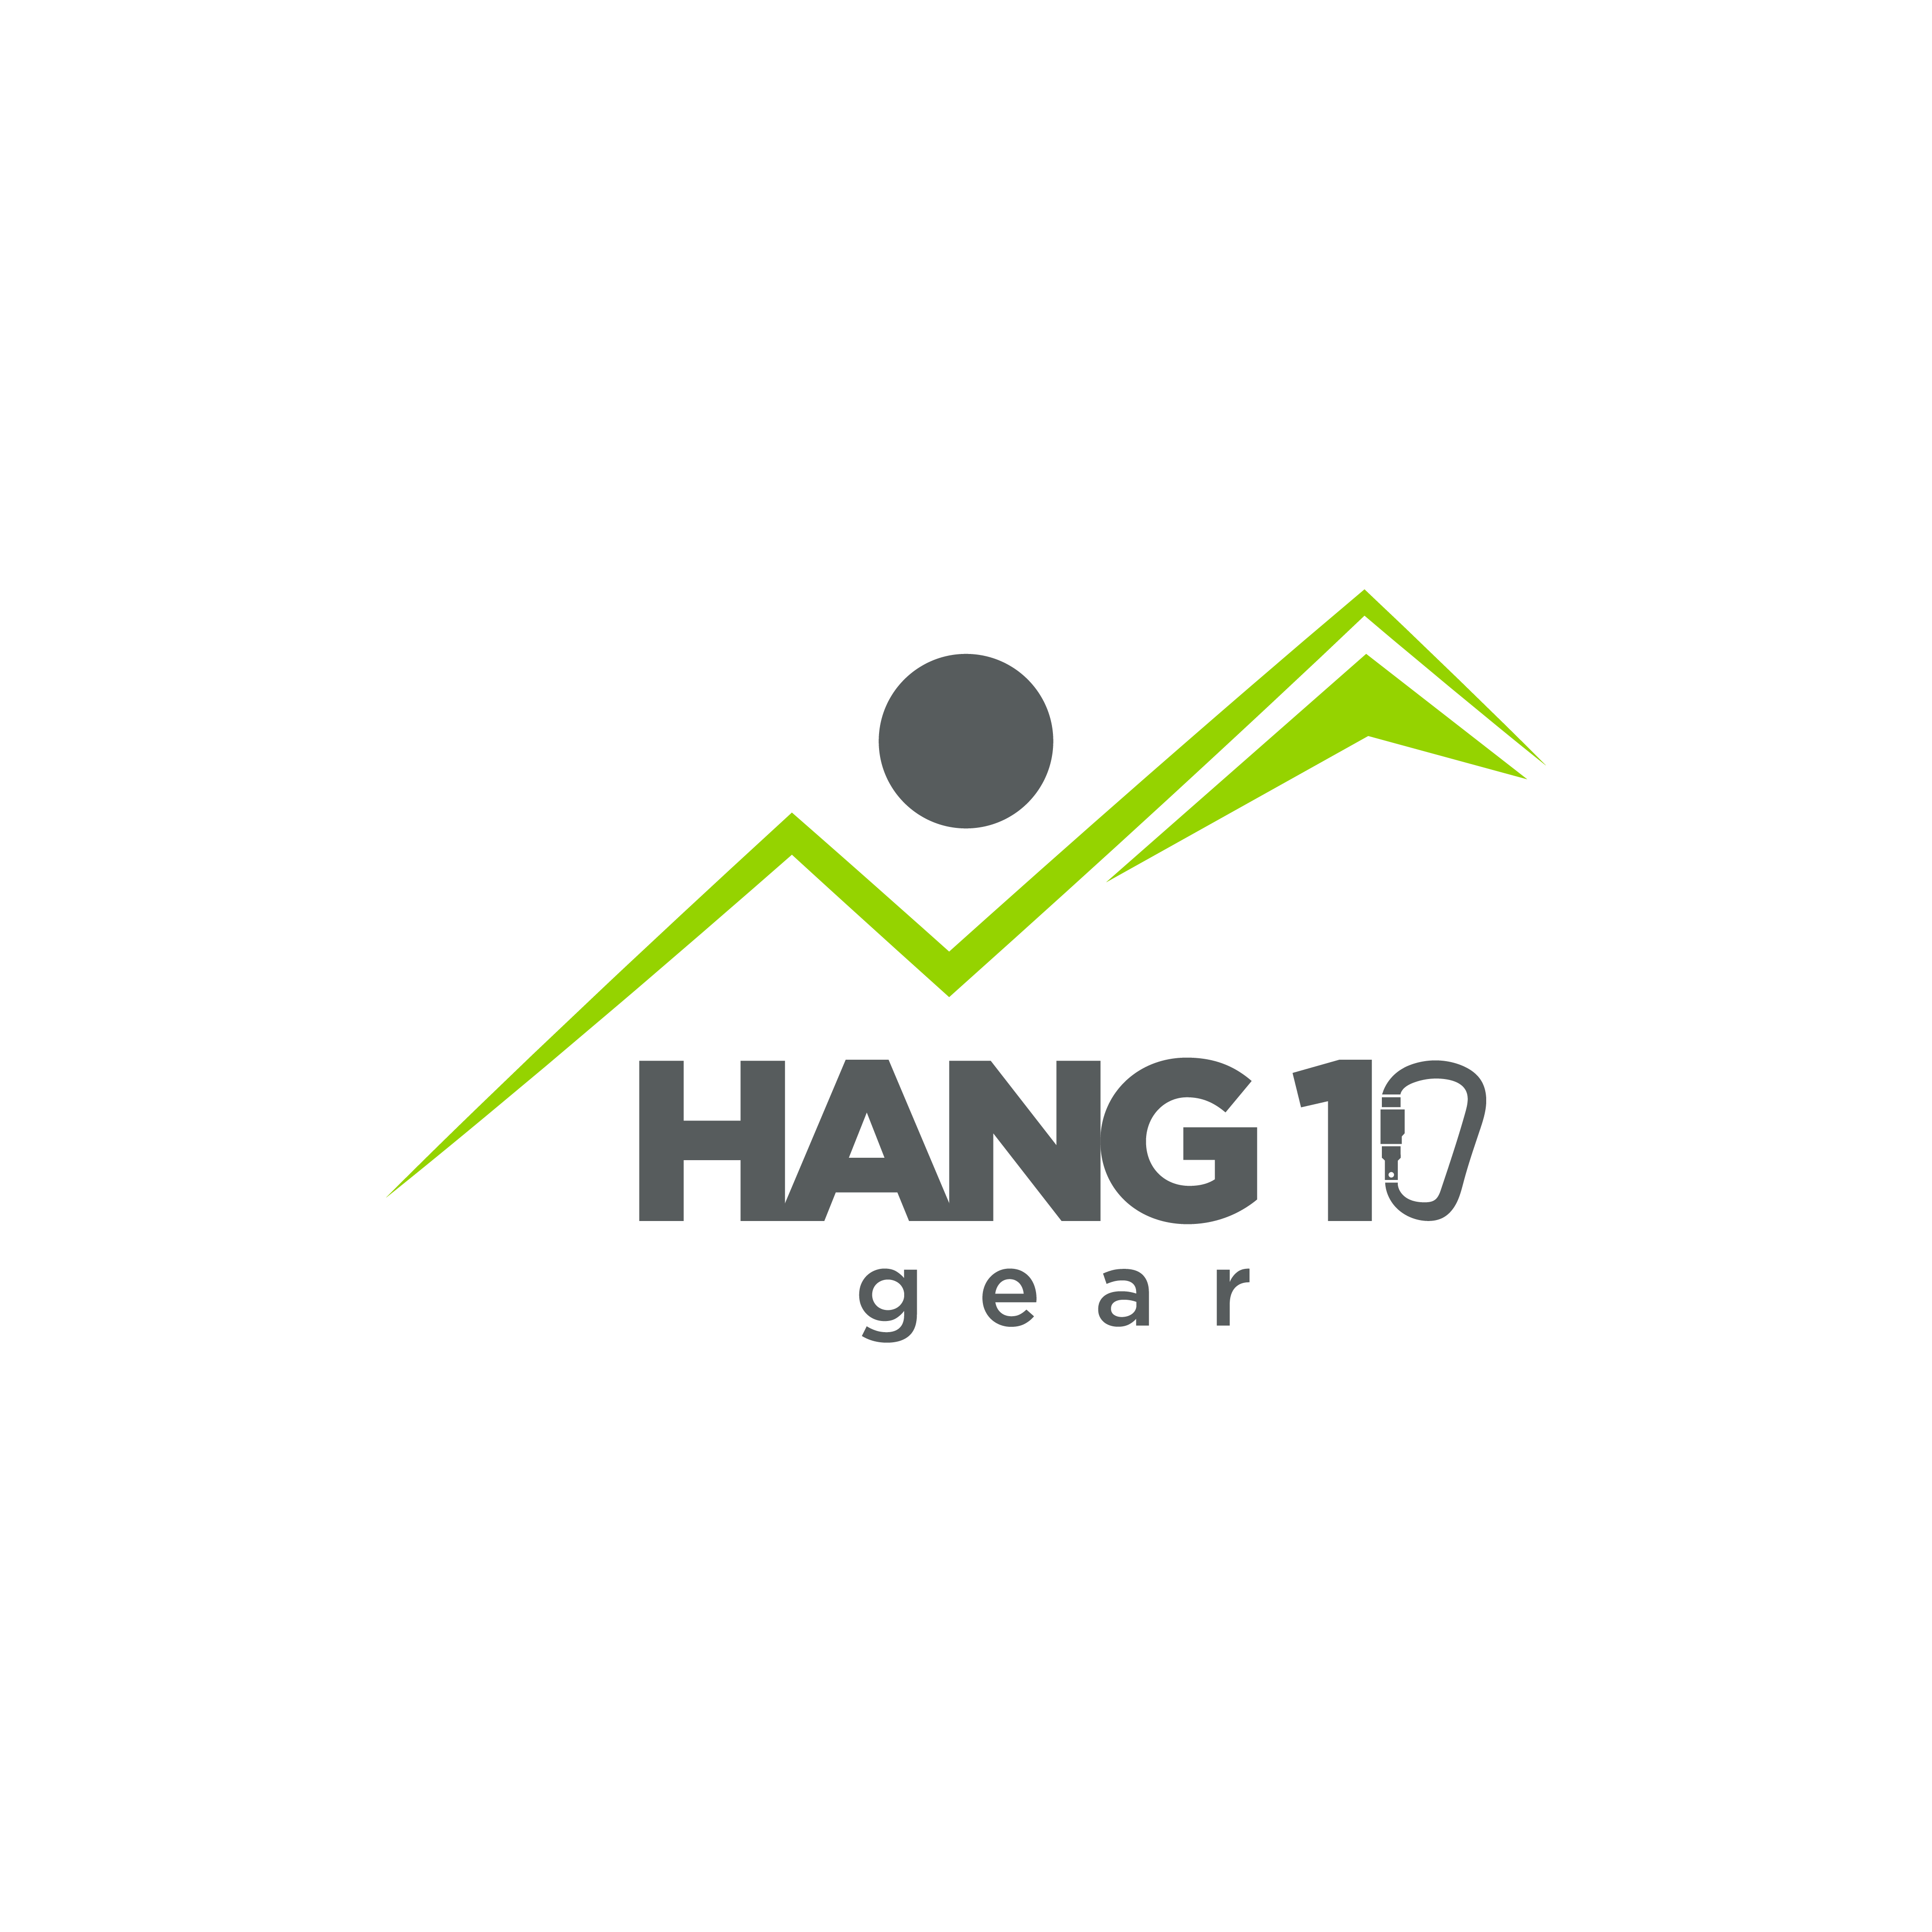 Hang 10 Gear